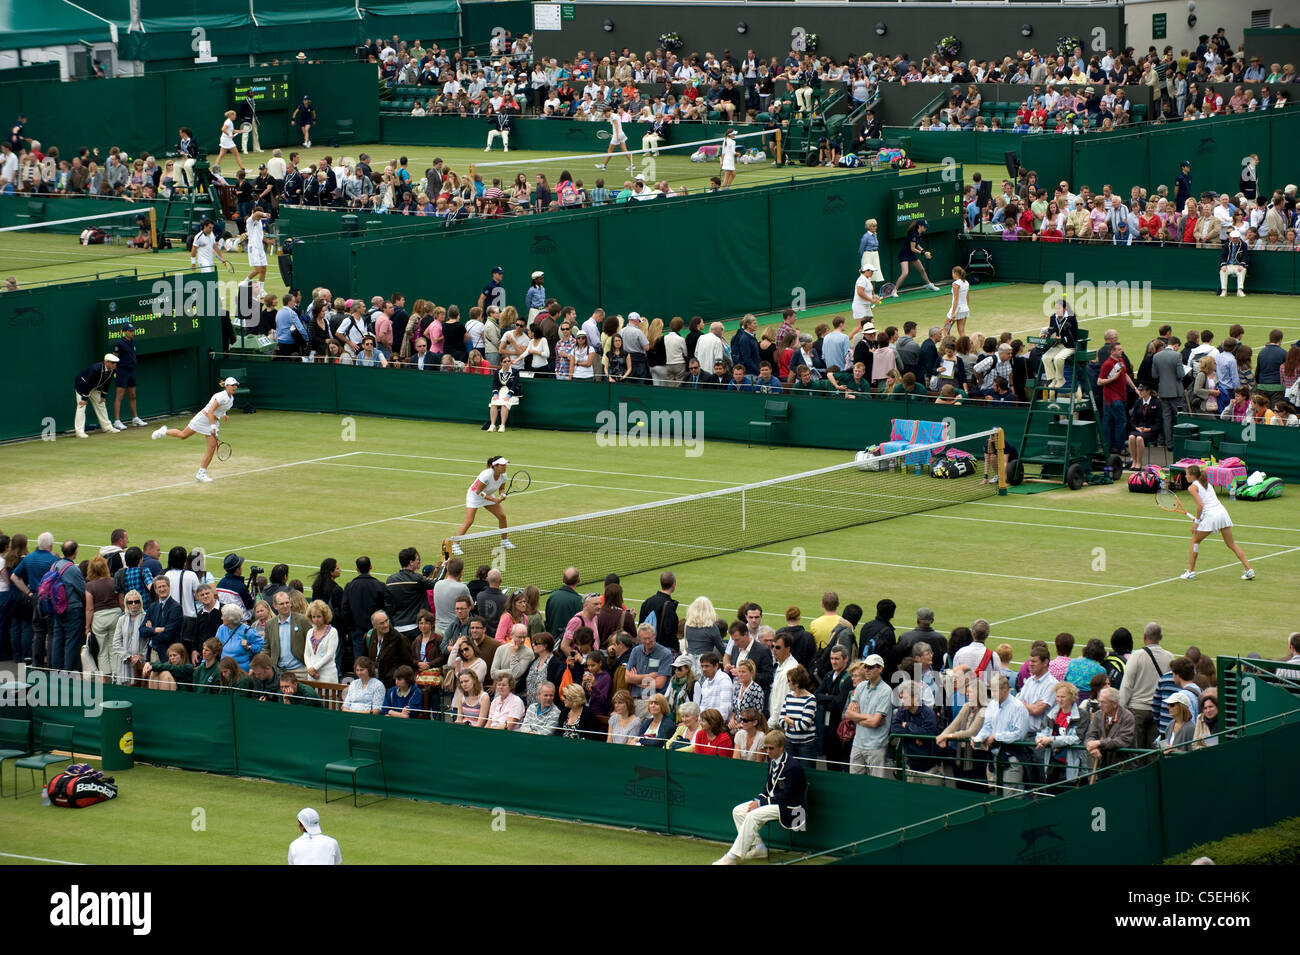 Vue sur cour 6 au cours de la 2011 Championnats de tennis de Wimbledon Banque D'Images